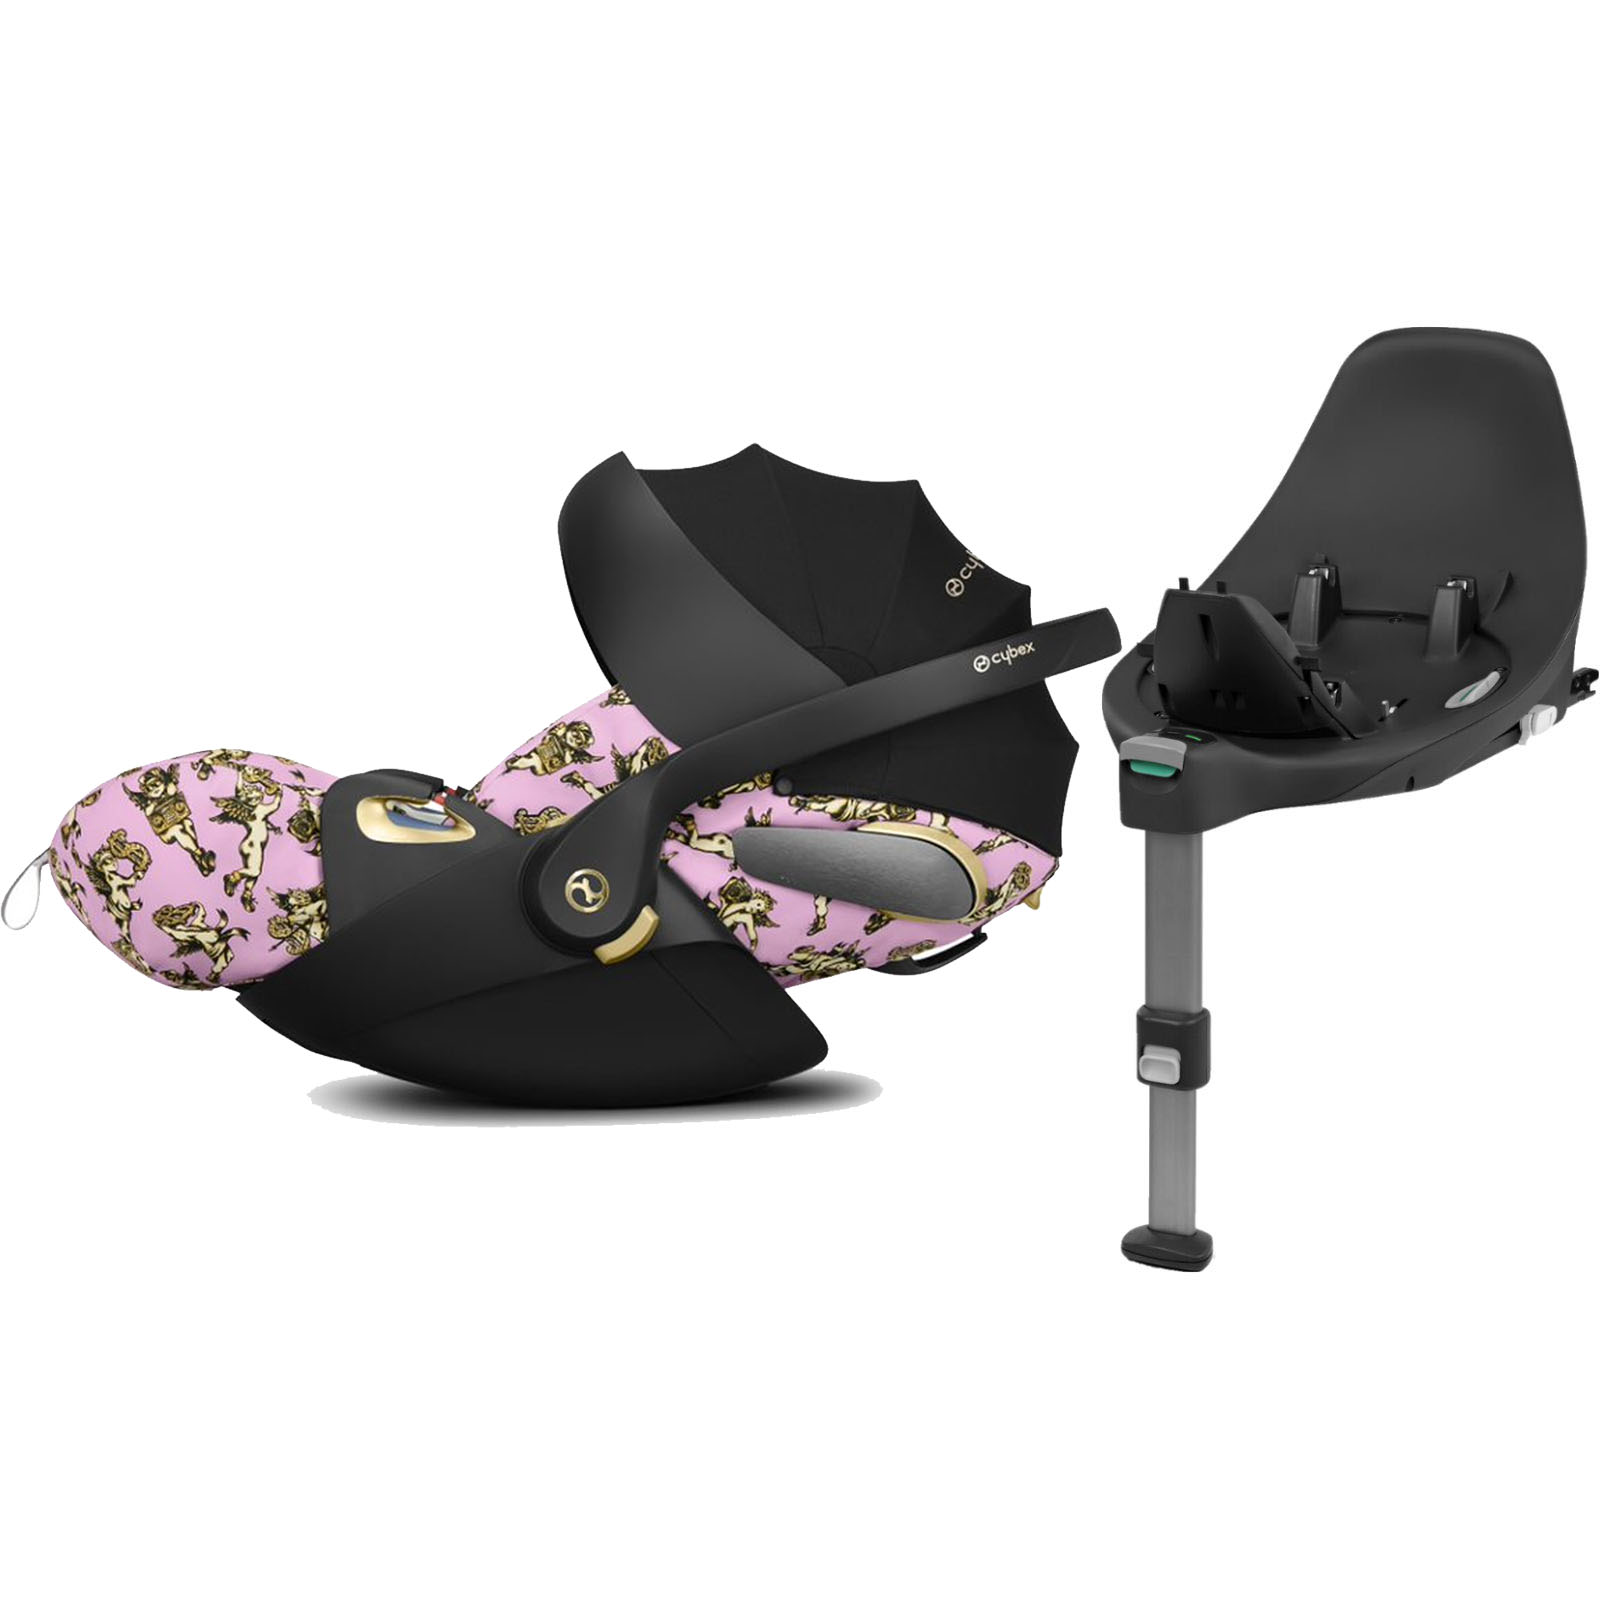 Cybex Cloud Z i-Size Lie-Flat Infant Car Seat with ISOFIX Base - Jeremy Scott Cherub Fashion Edition Pink